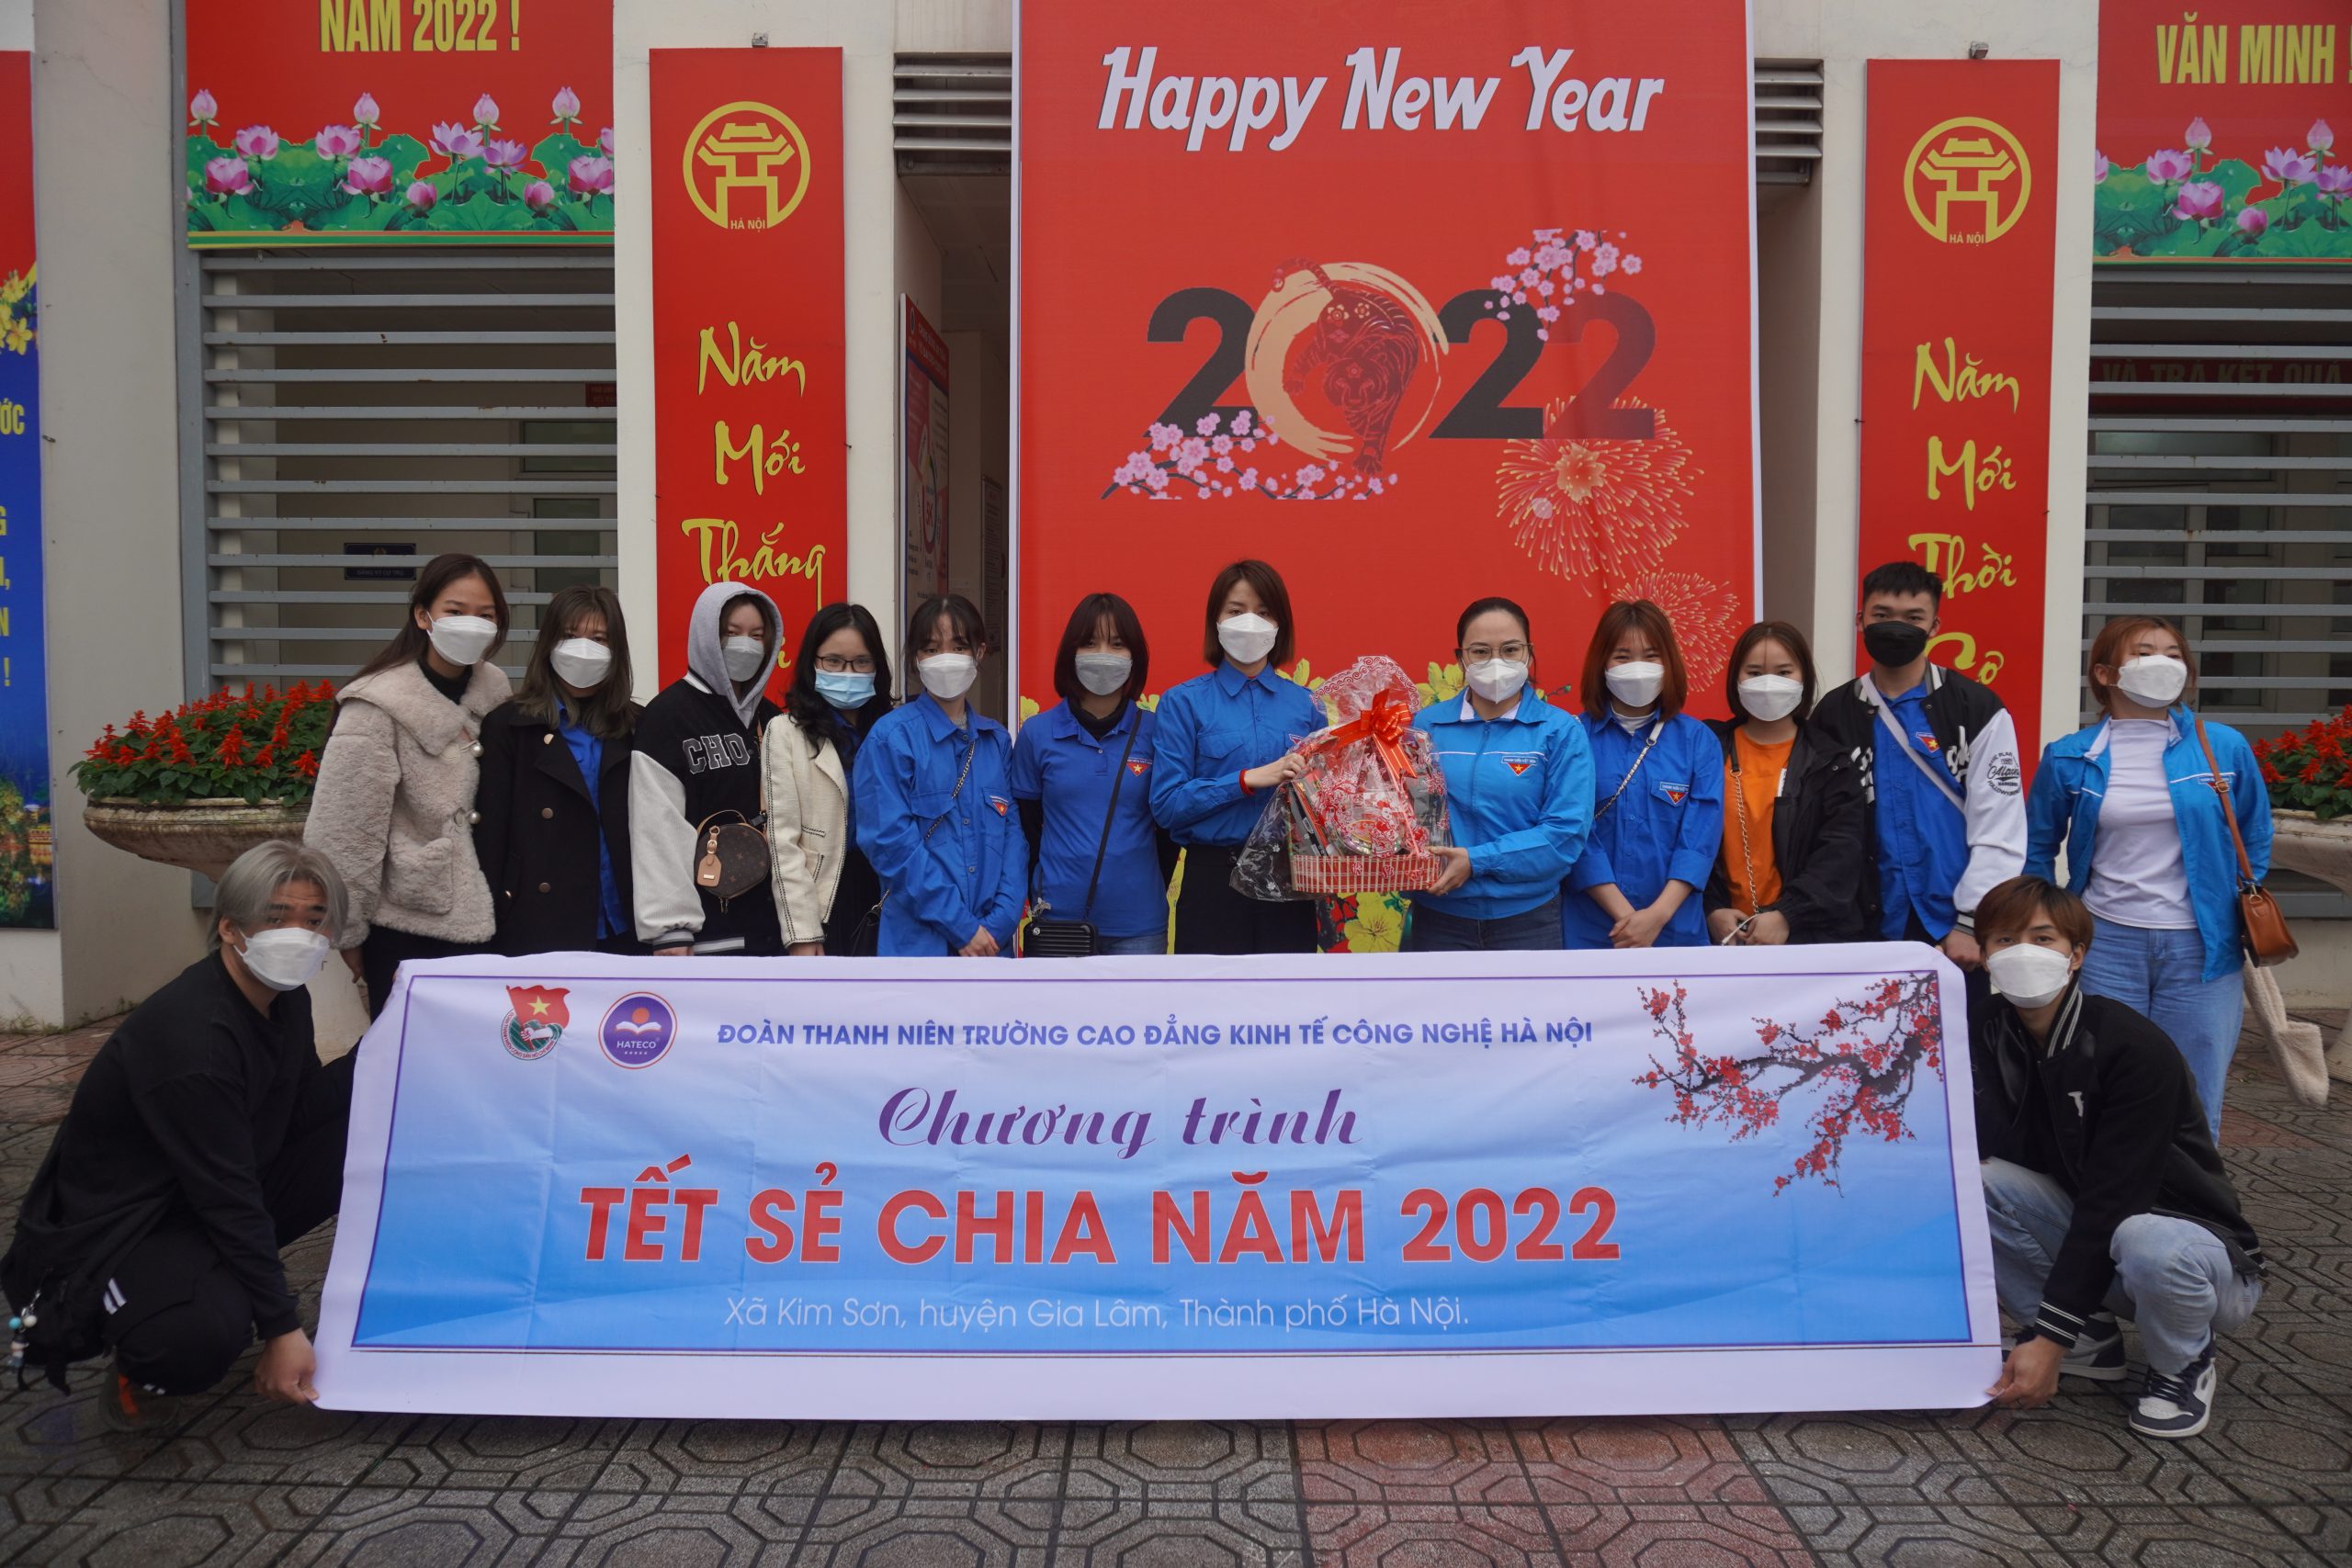 Chương trình Tết sẻ chia năm 2022 do BCH Đoàn trường Cao đẳng Kinh tế Công nghệ tổ chức sẽ trao phần quà đến với bạn học sinh nghèo ở huyện Gia Lâm, thành phố Hà Nội